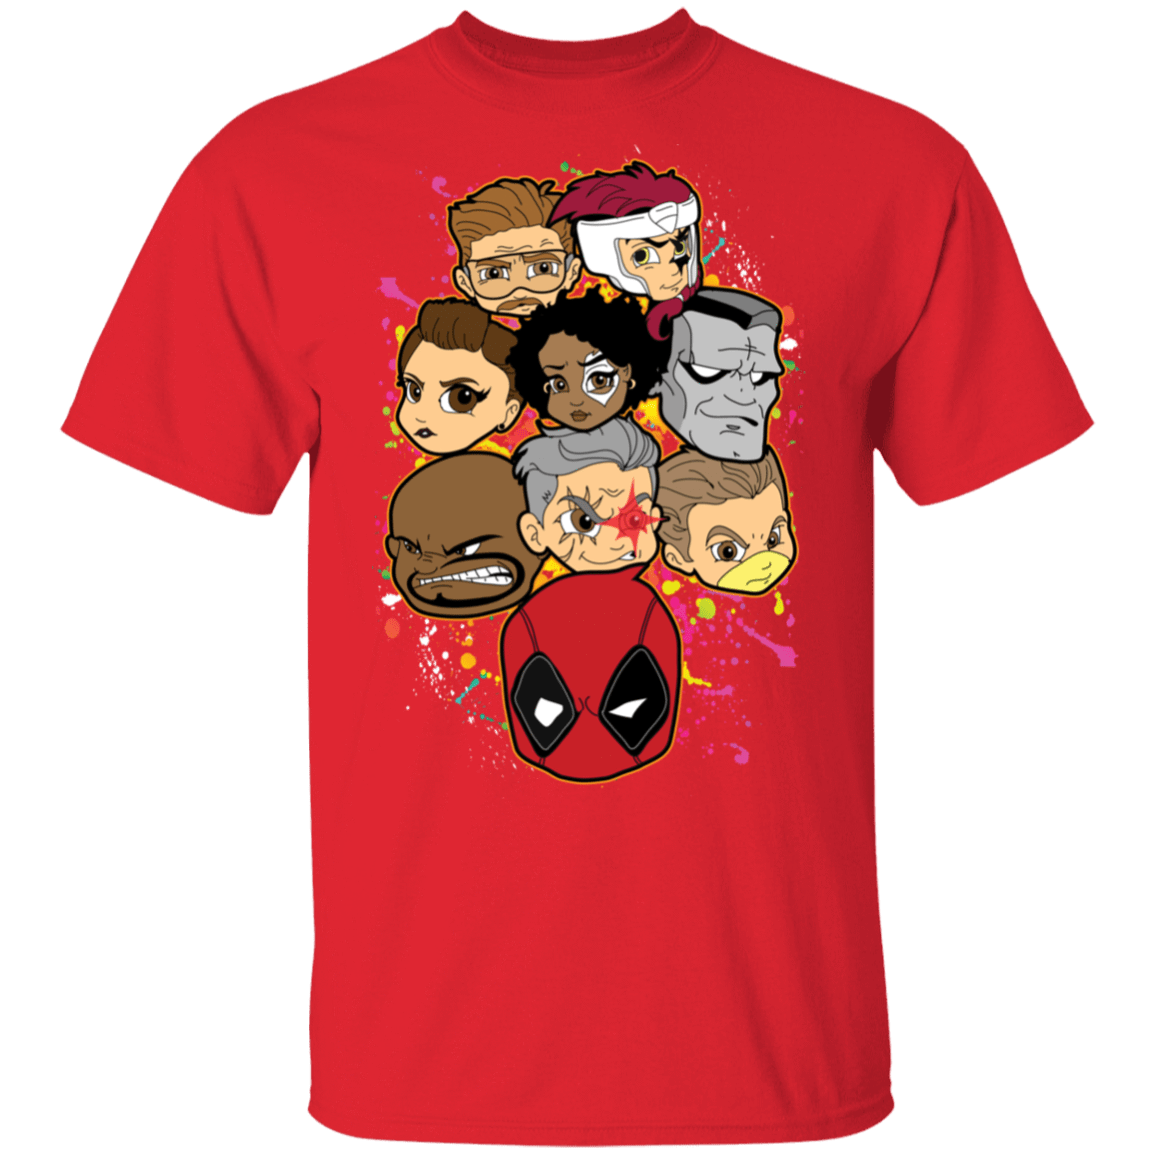 T-Shirts Red / S Deadpool Heads T-Shirt